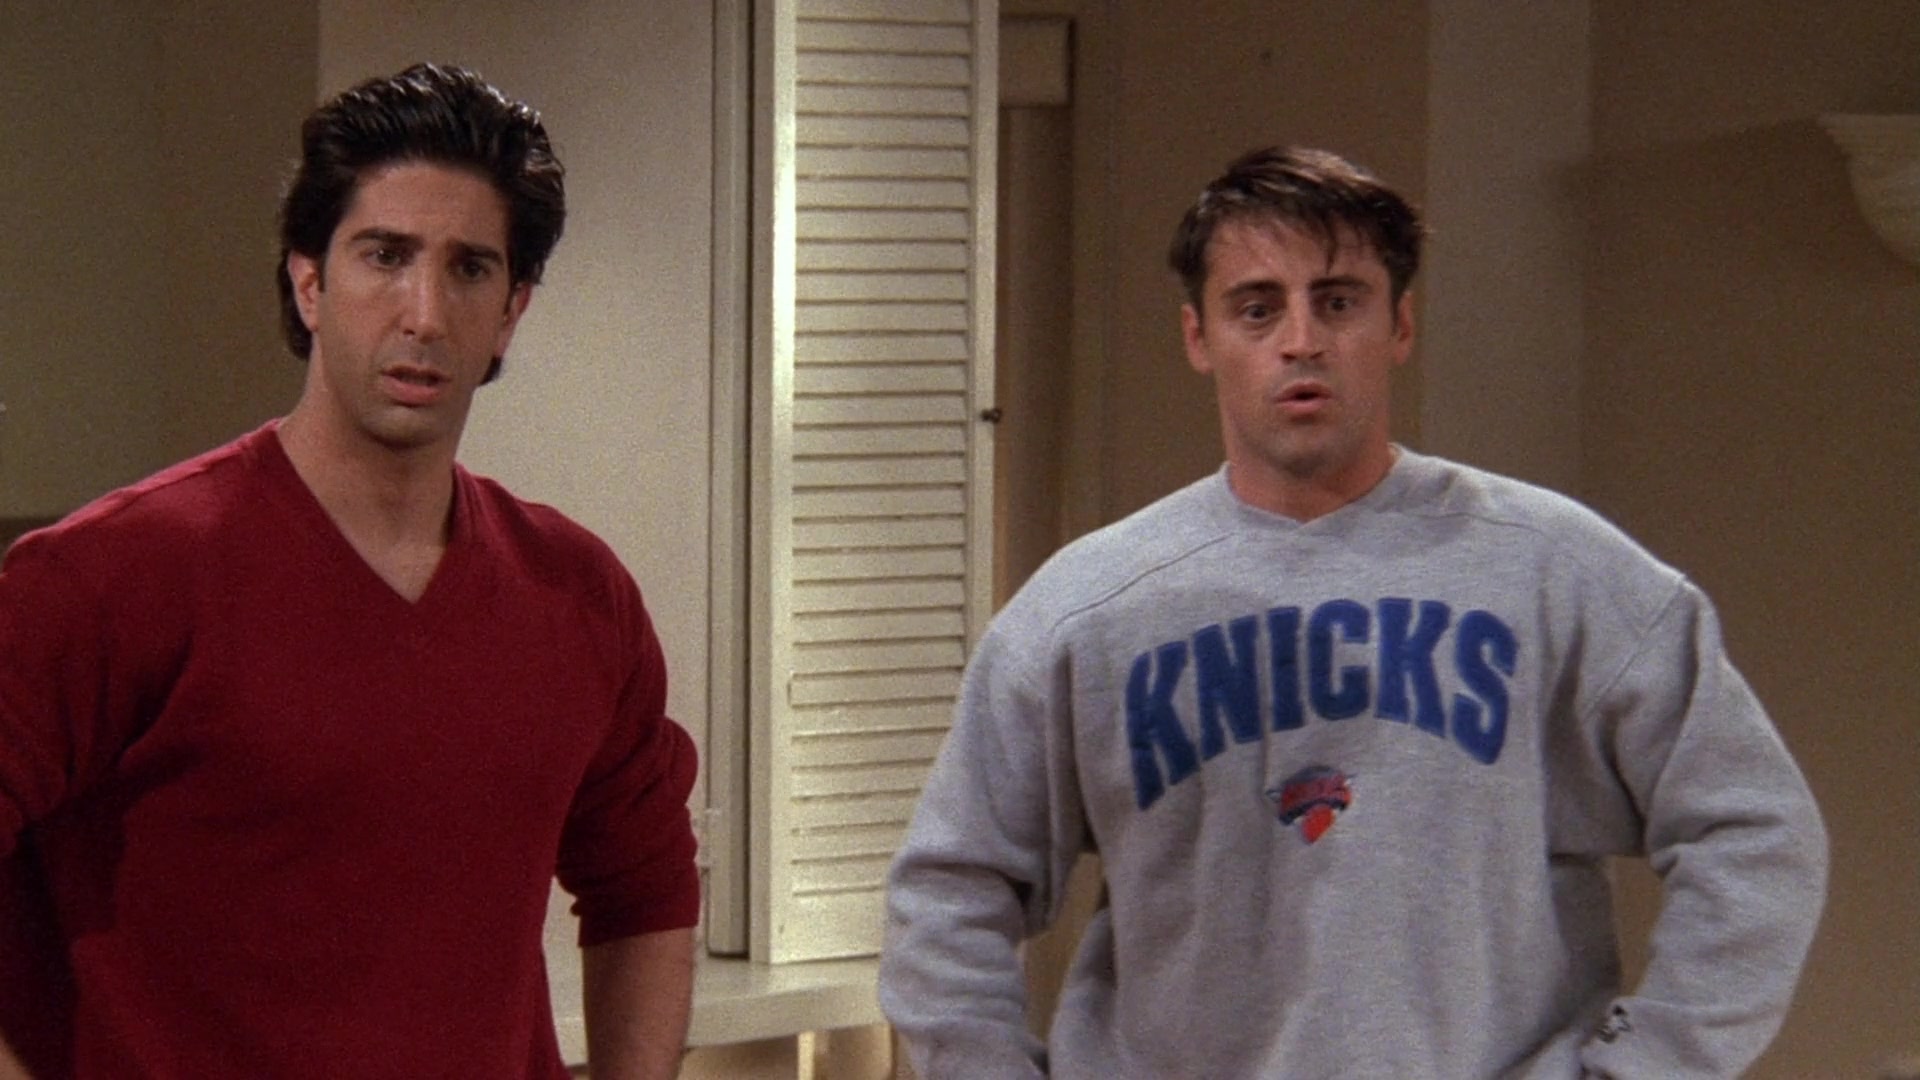 Jersey Knicks Joey Tribianni (Matt Leblanc) in Friends S07E01